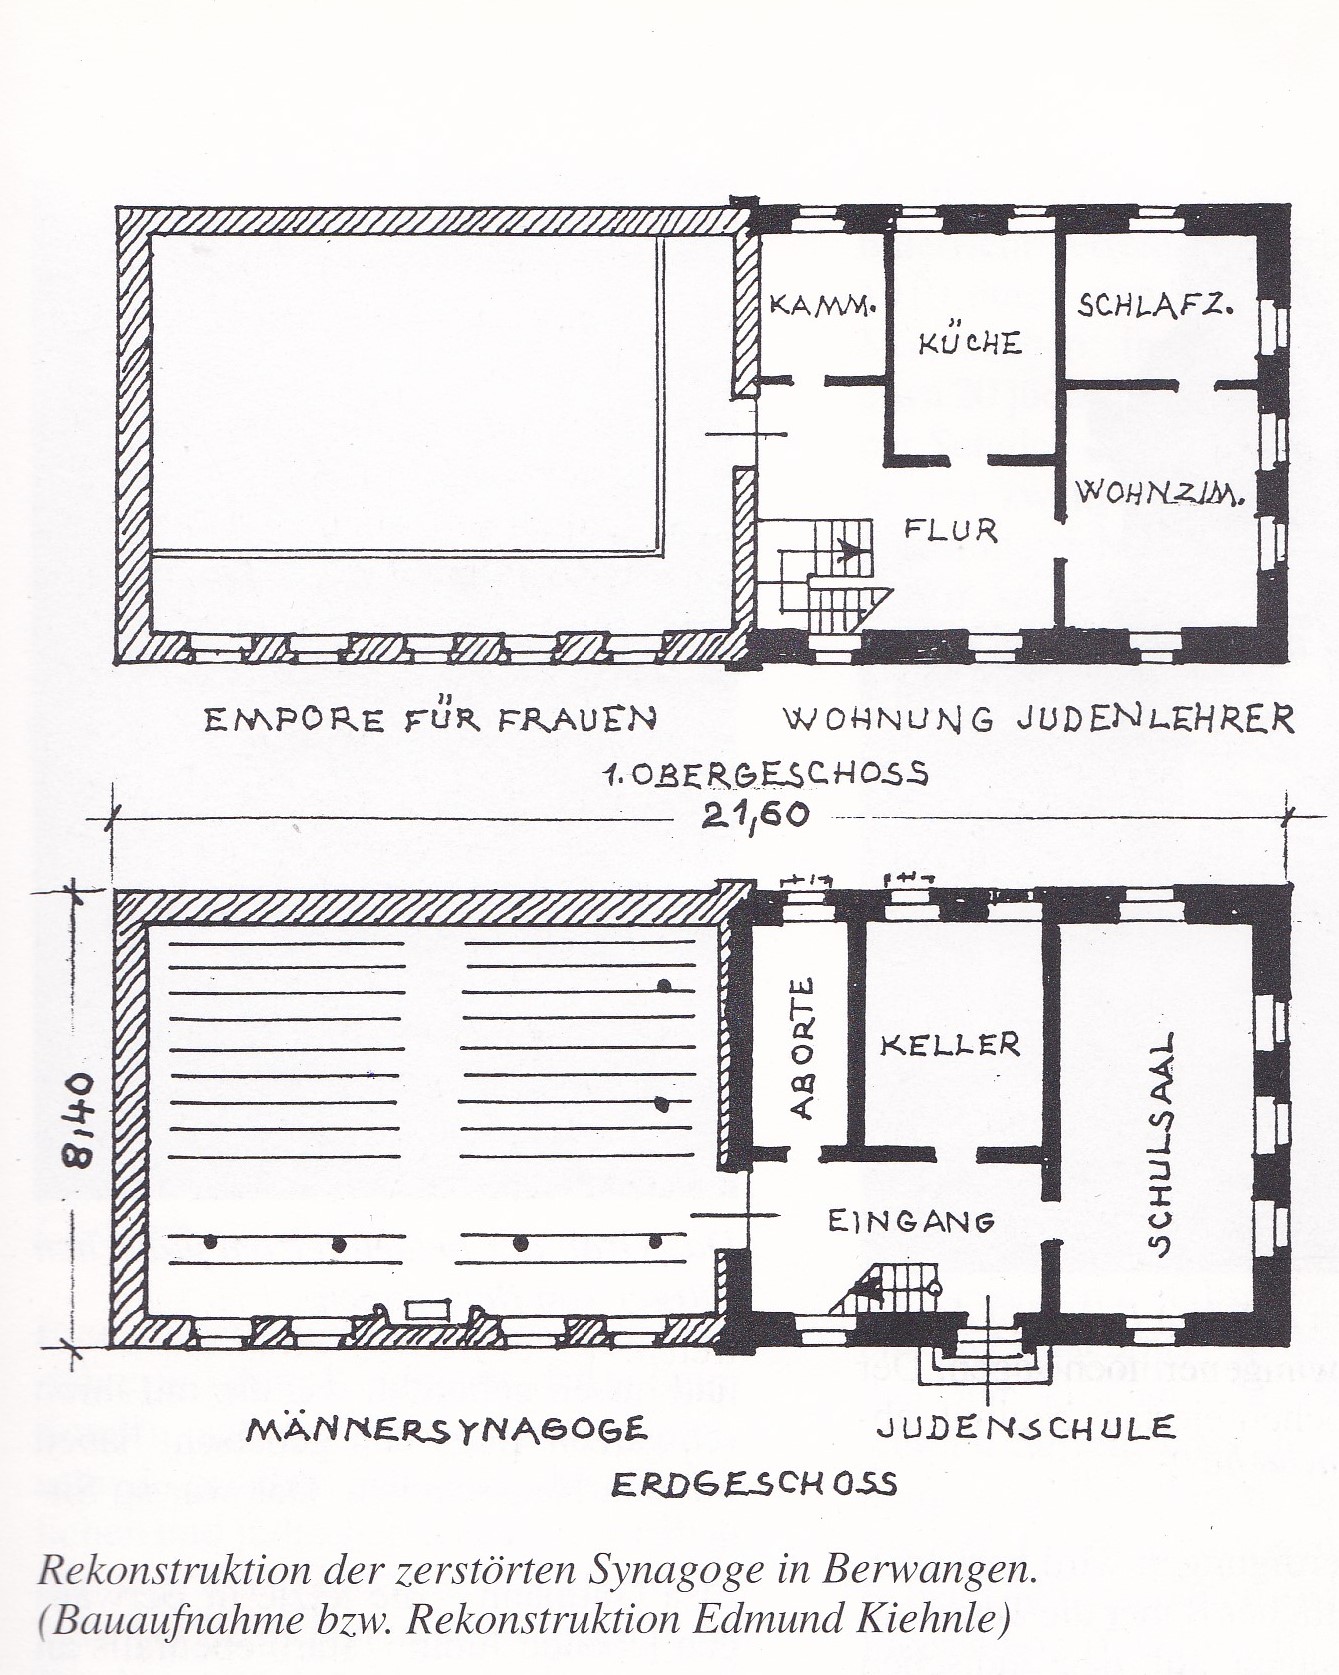  Die Baupläne zeigen das Erdgeschoss und 1. Obergeschoss der zerstörten Synagoge - das Bild wird mit Klick vergrößert 